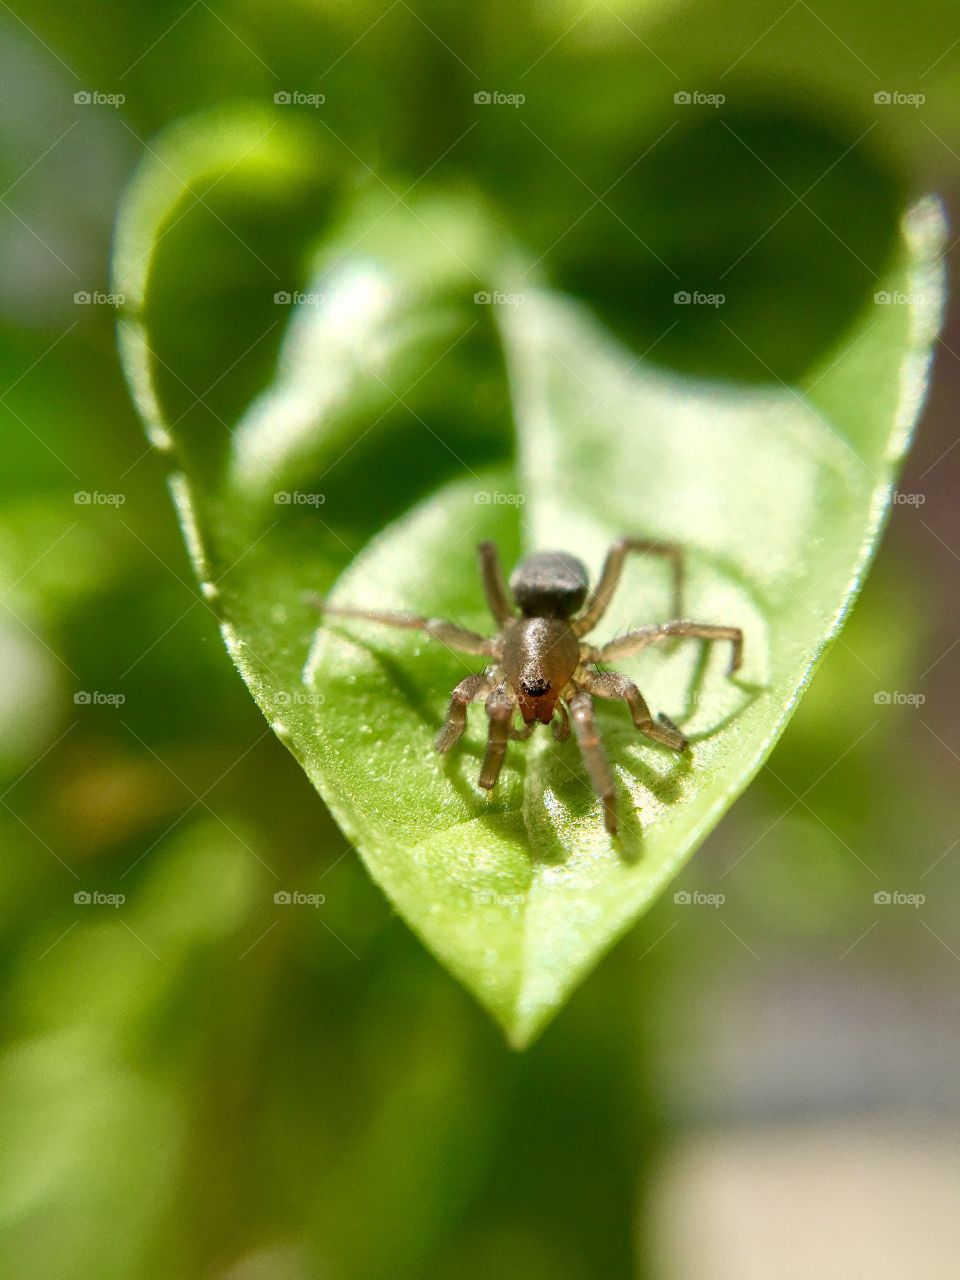 Spider sunbathing on a leaf 